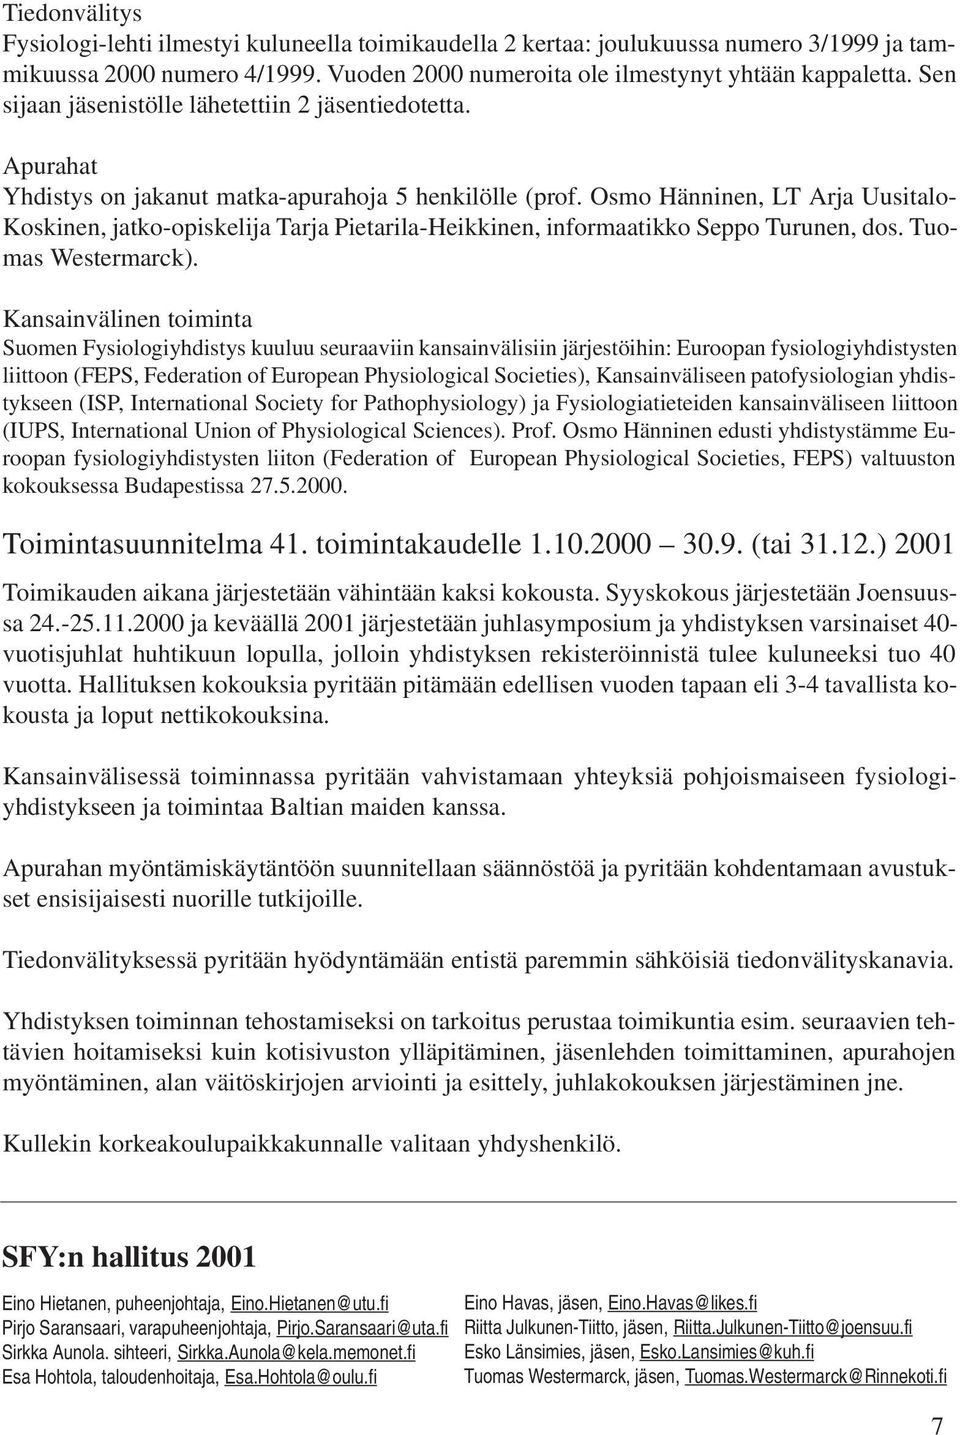 Osmo Hänninen, LT Arja Uusitalo- Koskinen, jatko-opiskelija Tarja Pietarila-Heikkinen, informaatikko Seppo Turunen, dos. Tuomas Westermarck).